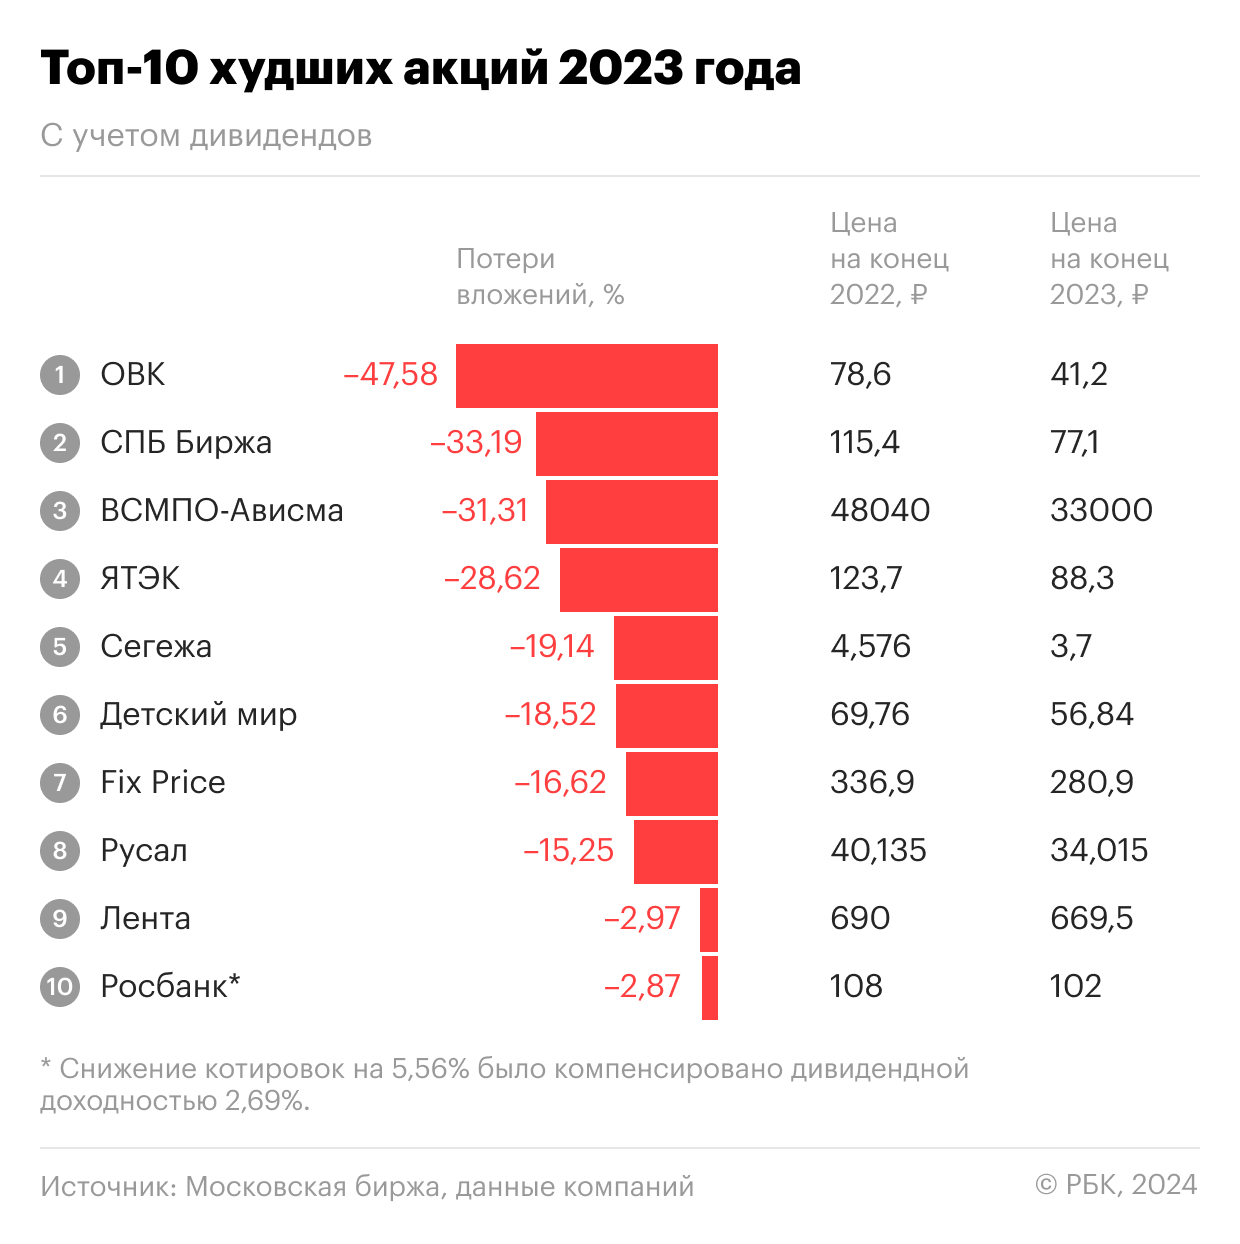 Аутсайдеры российского рынка акций в 2023 году с учетом дивидендных выплат